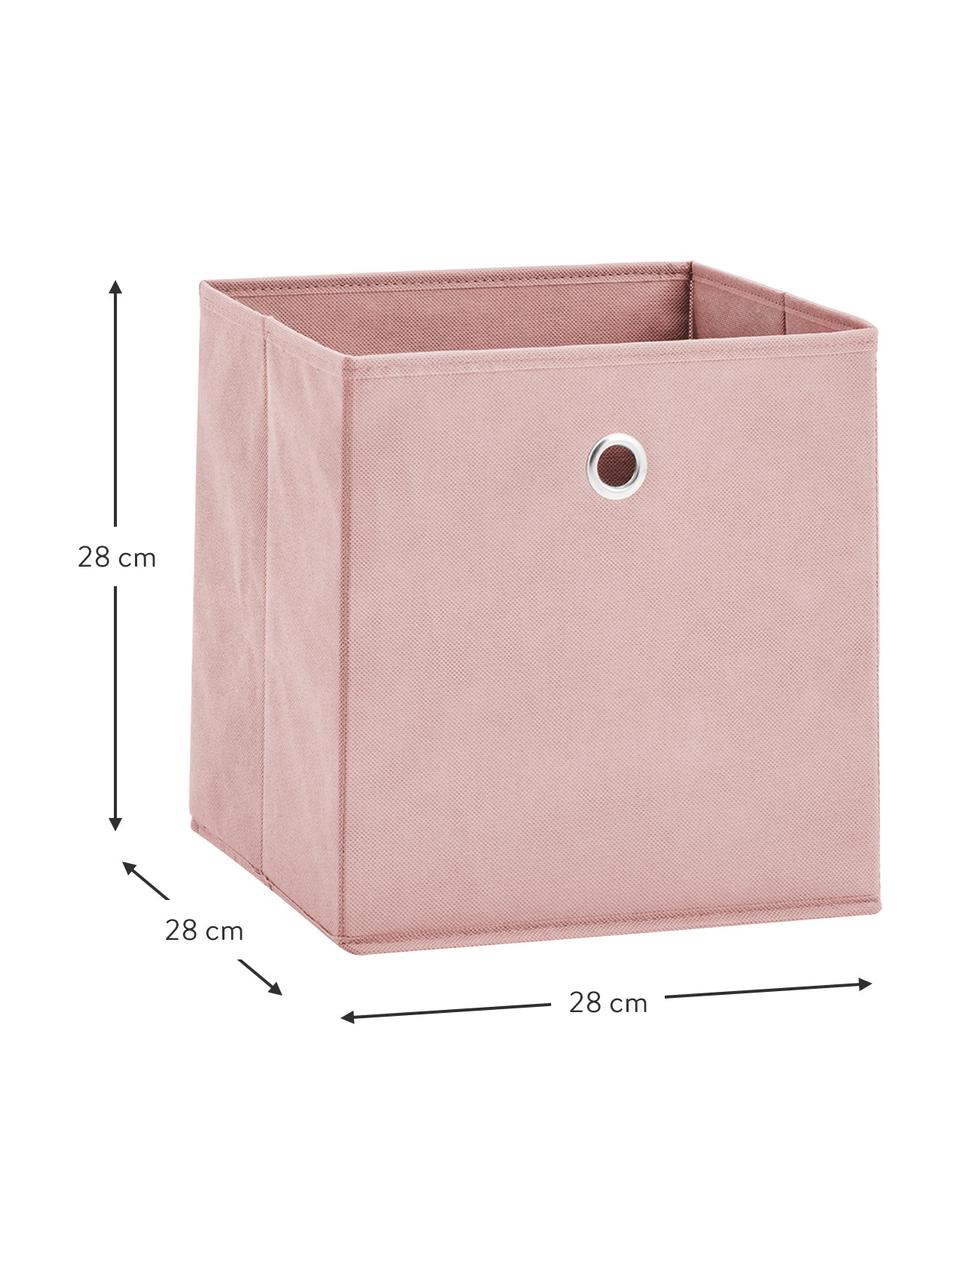 Skladovací box Lisa, Růžová, krémově bílá, Š 28 cm, V 28 cm